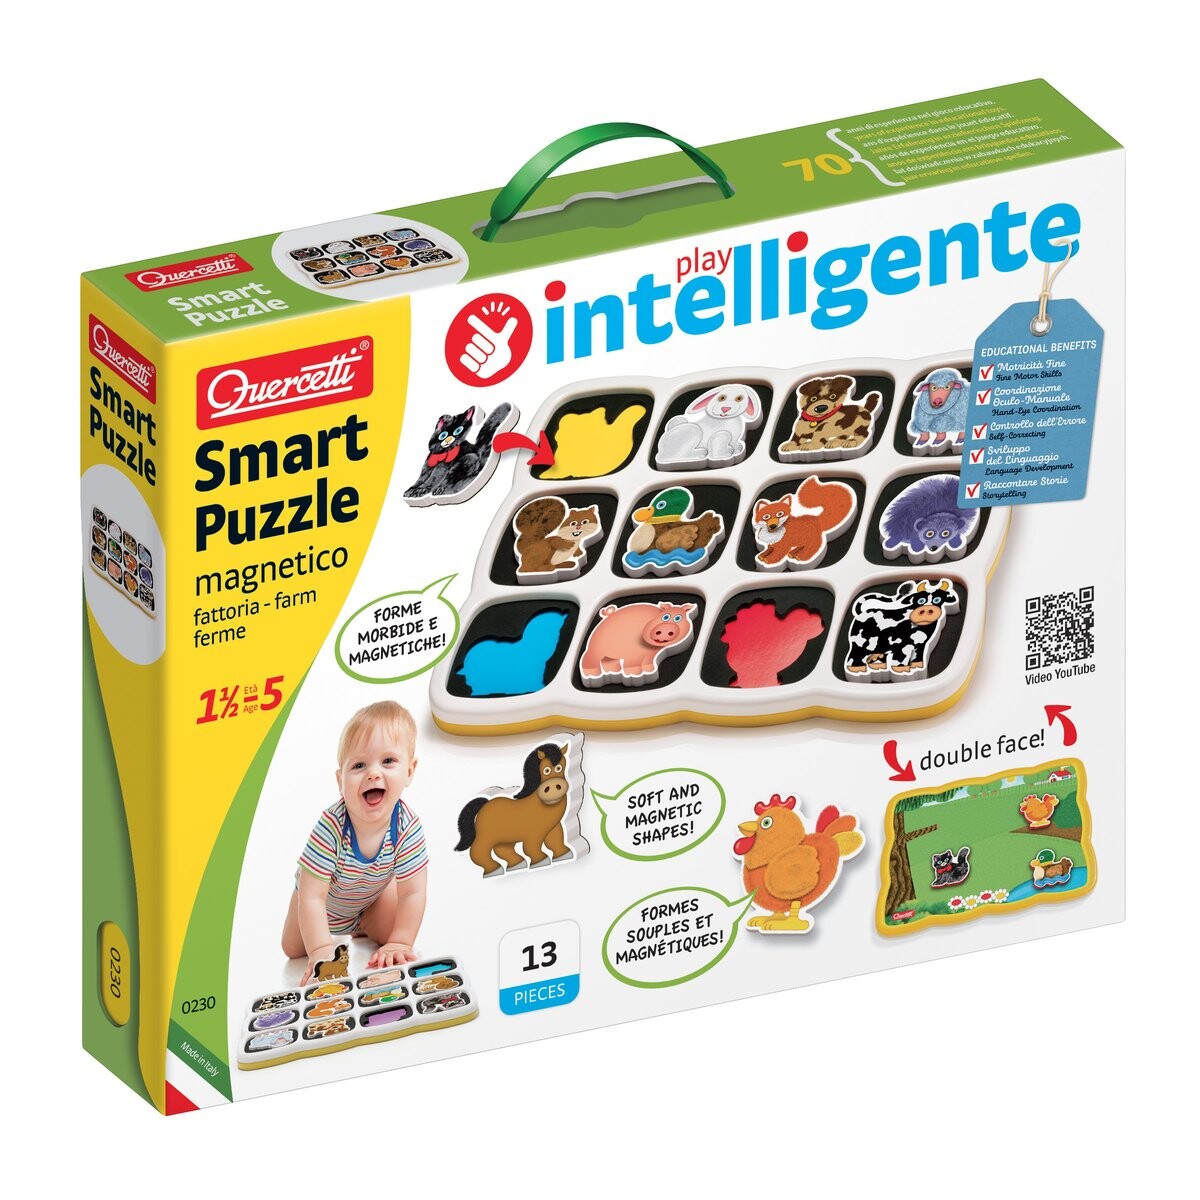 Smart puzzle magnetico fattoria, quercetti, prima infanzia, 18 mesi - 5 anni - 